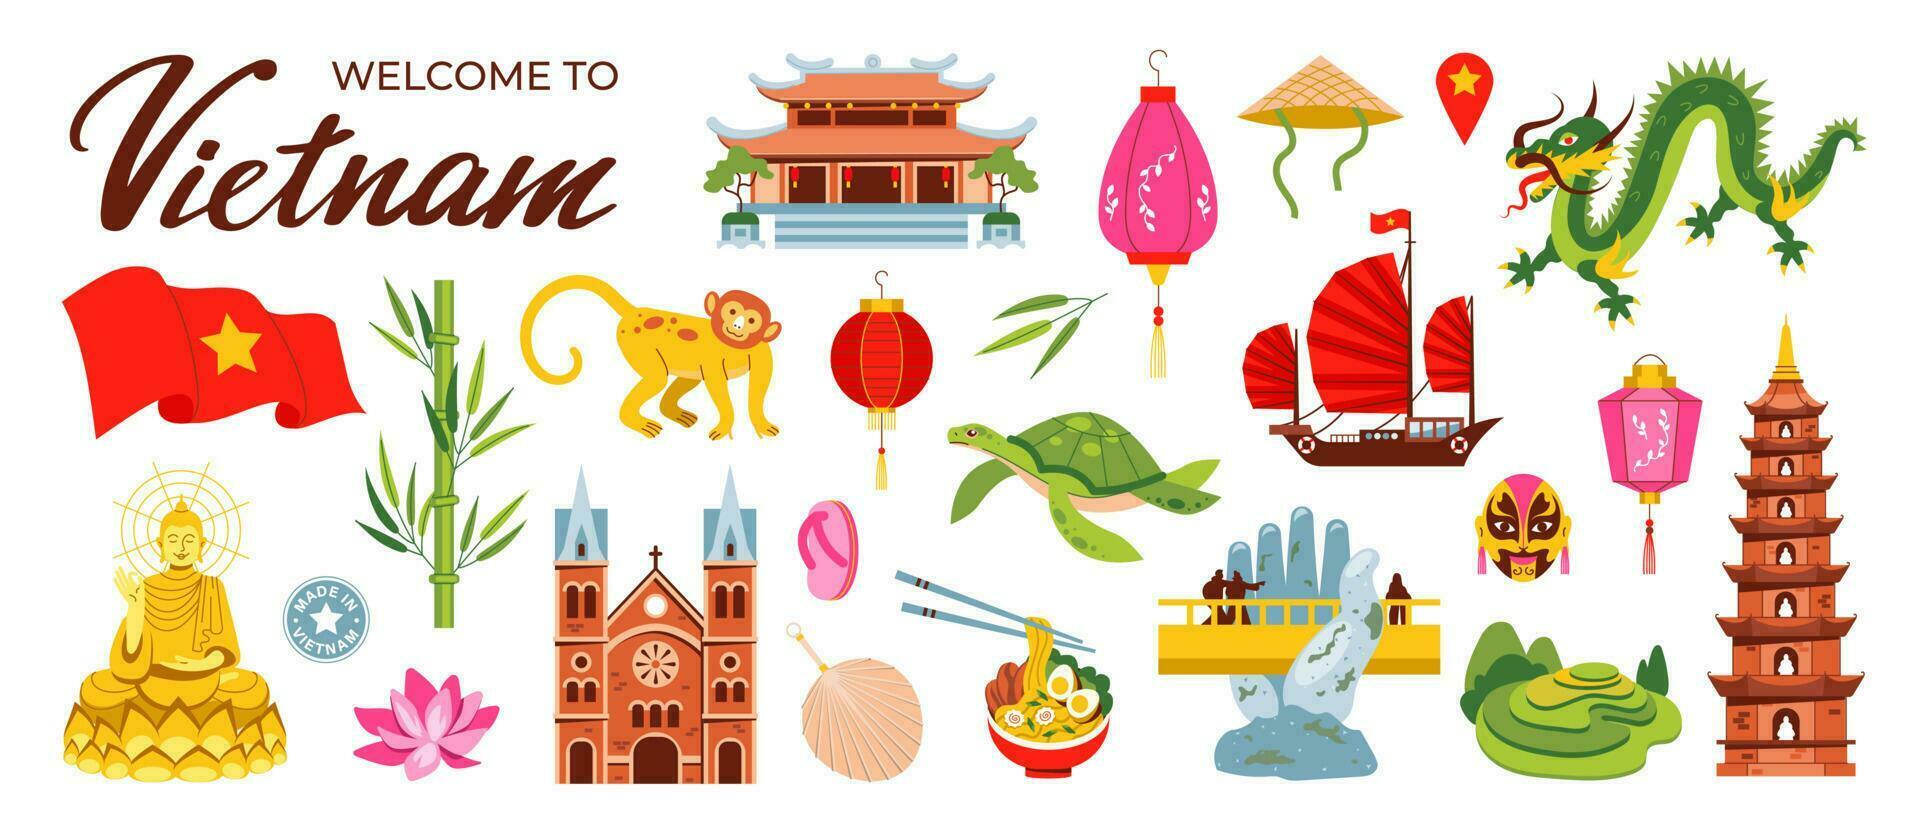 Bienvenido a Vietnam. asiático santuarios, budismo. problema, templo, bambú y continuar. chino linternas, loto. vector